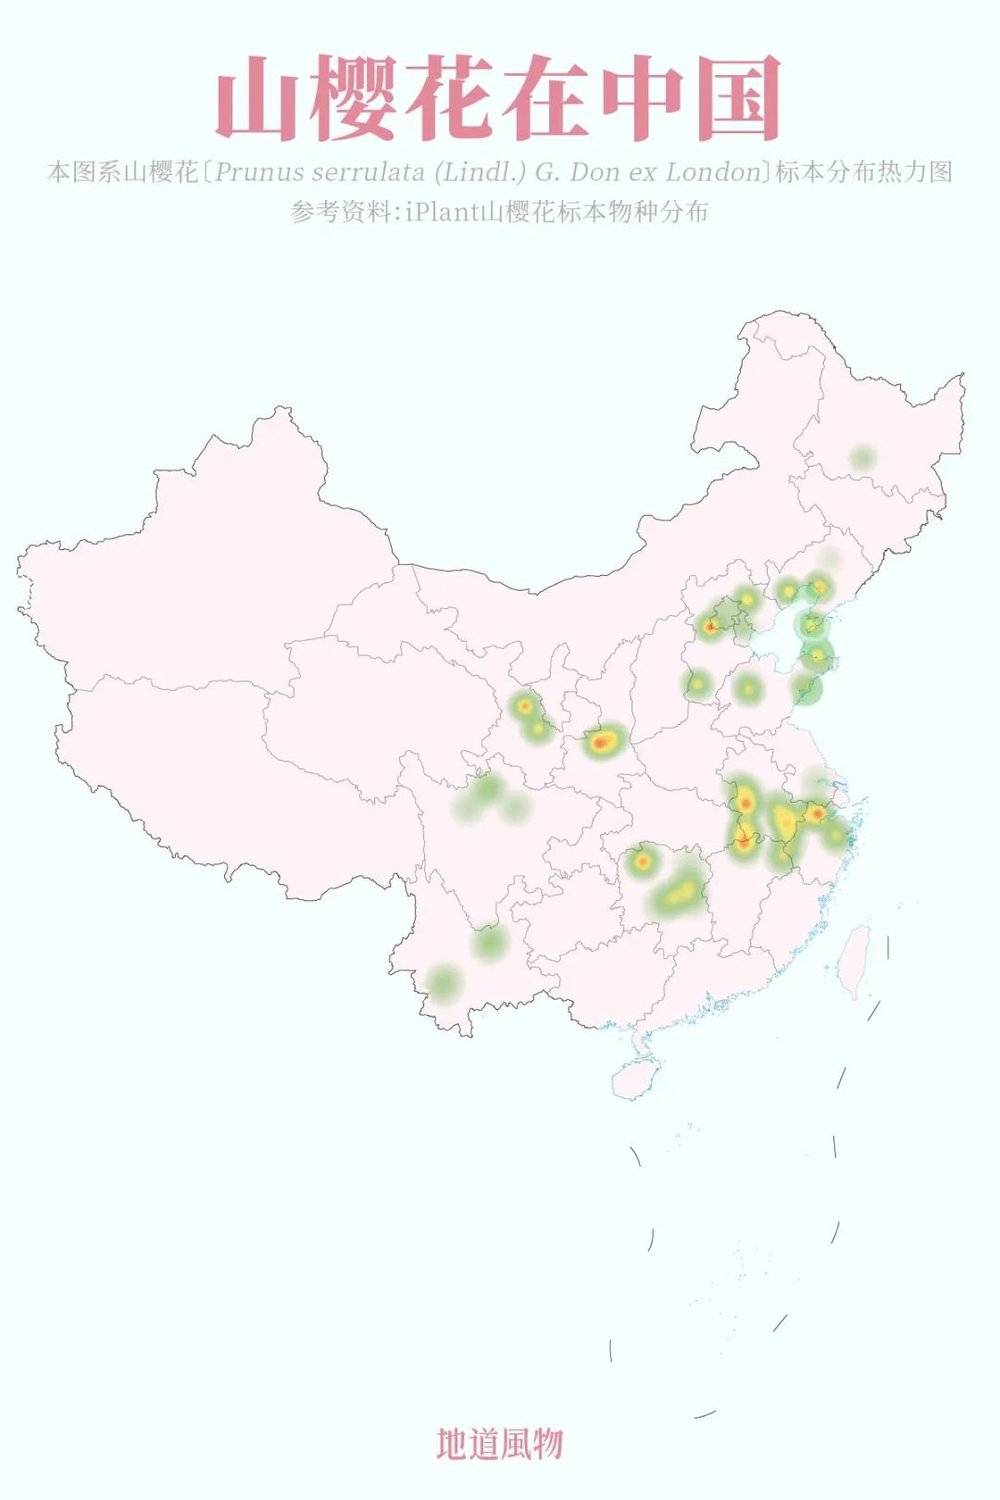 中国地图轮廓 简化图片